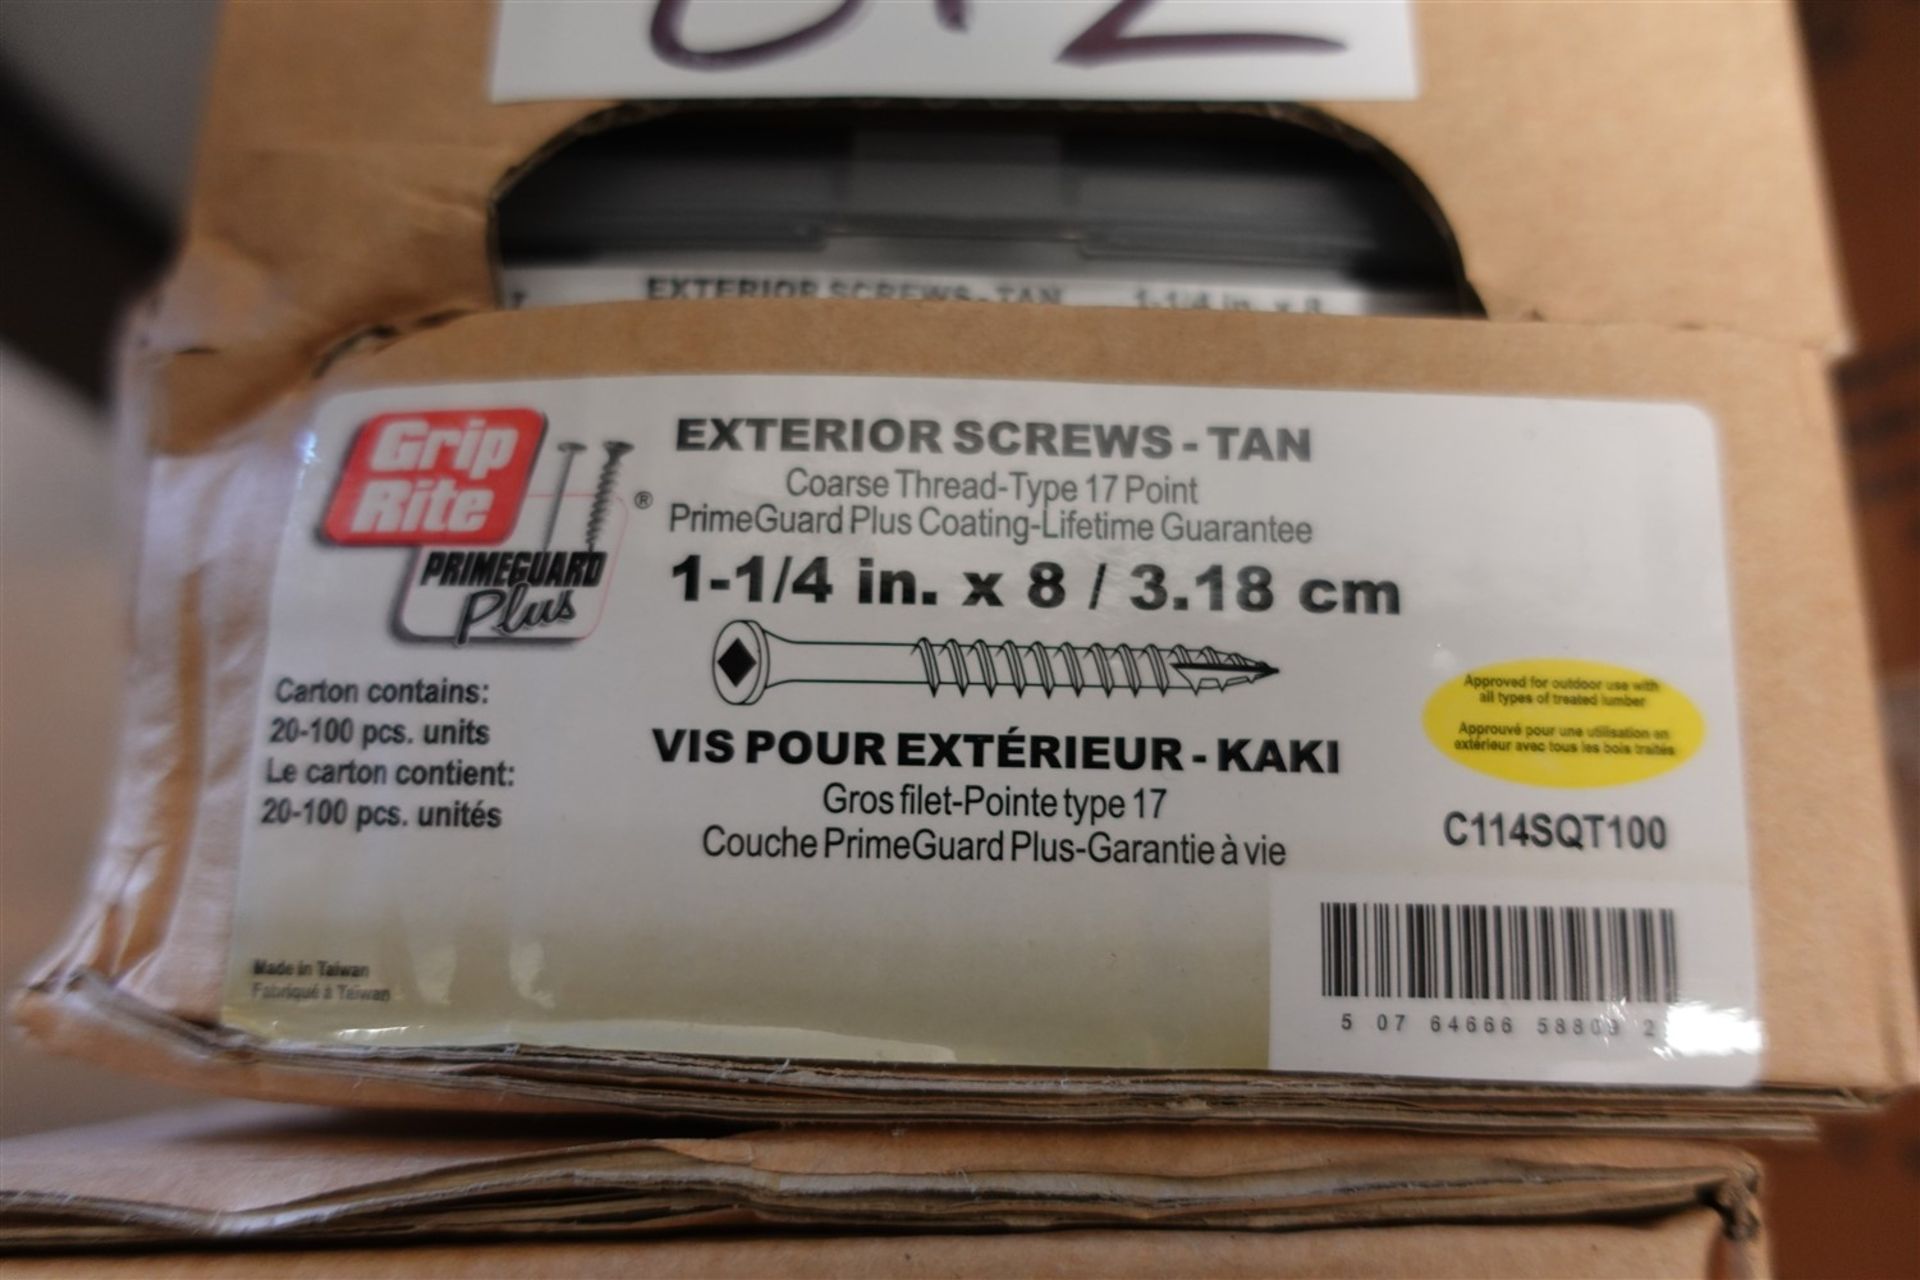 Box of Grip Rite exterior screws-Tan, 1 1/4 IN. x 8/ 3.18 cm - Image 2 of 2